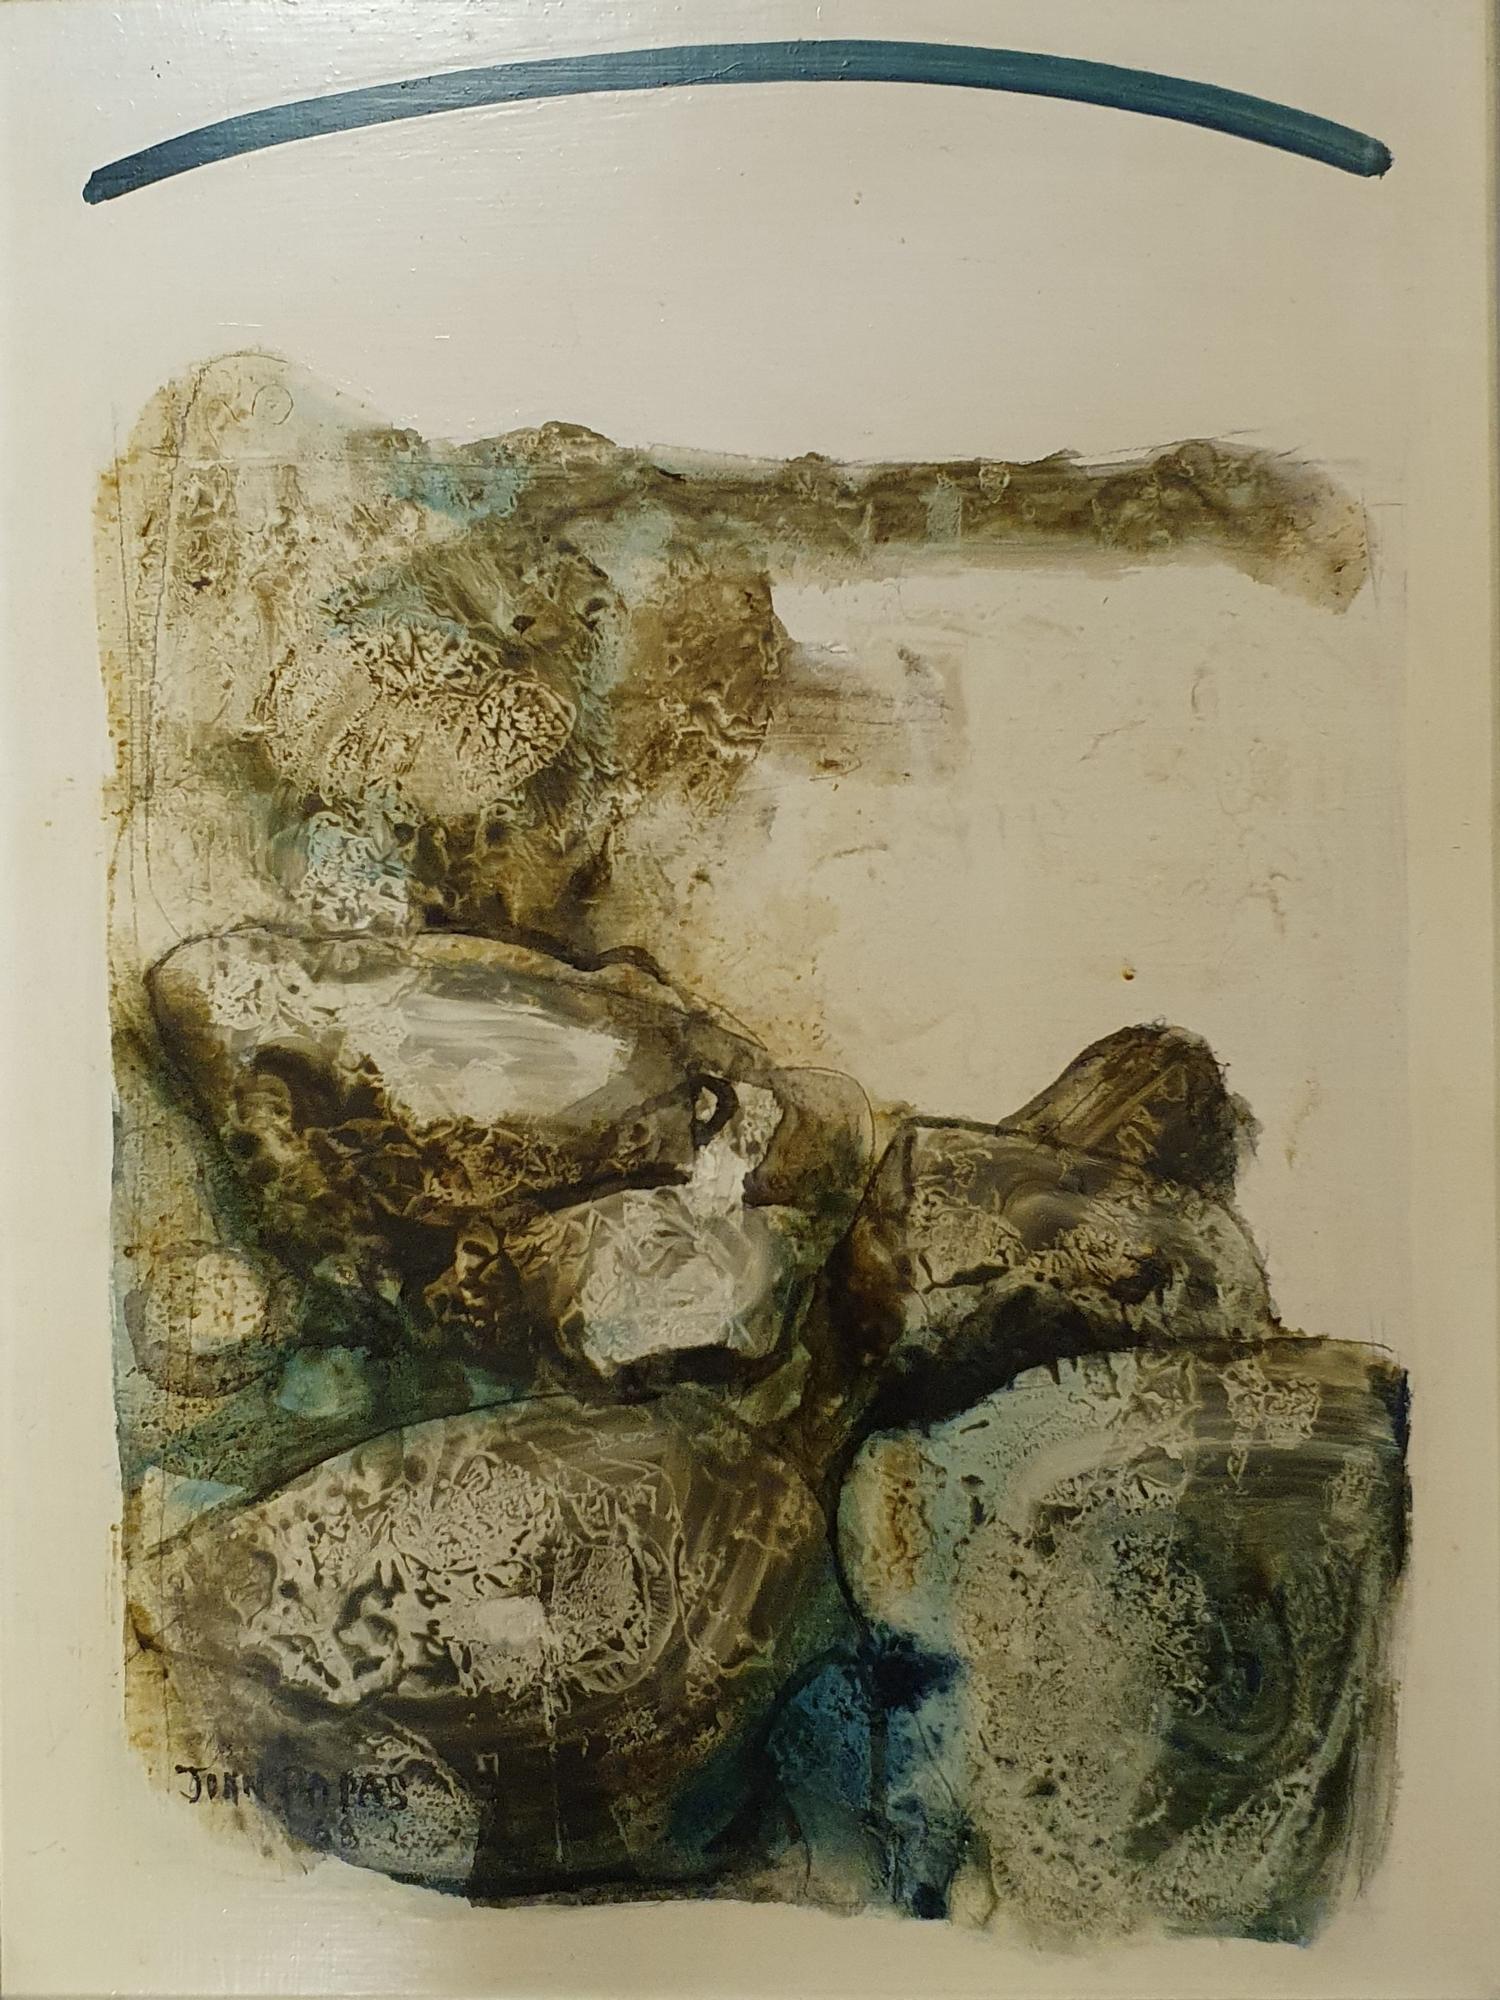 John Papas, abstract, mixed media, 60 x 45 cm